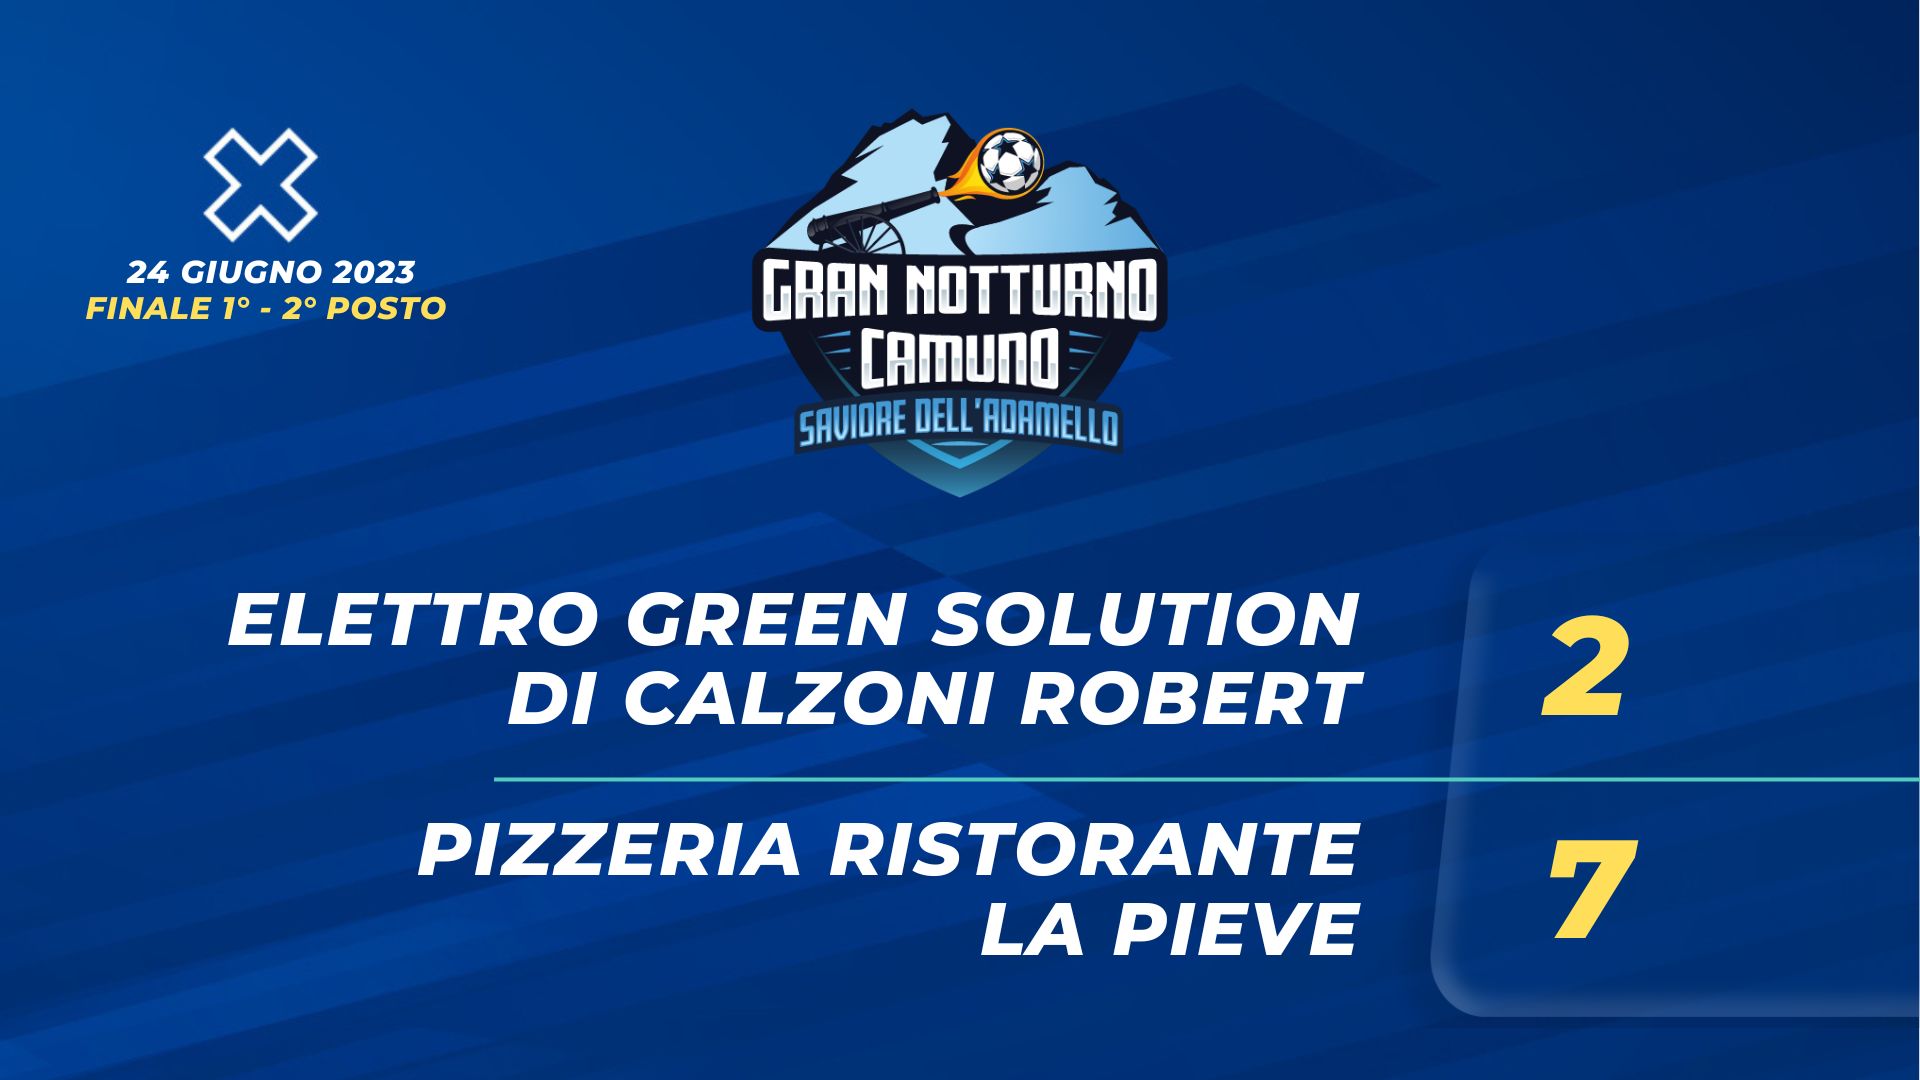 Elettro Green Solution - Pizzeria Ristorante La Pieve 2 - 7